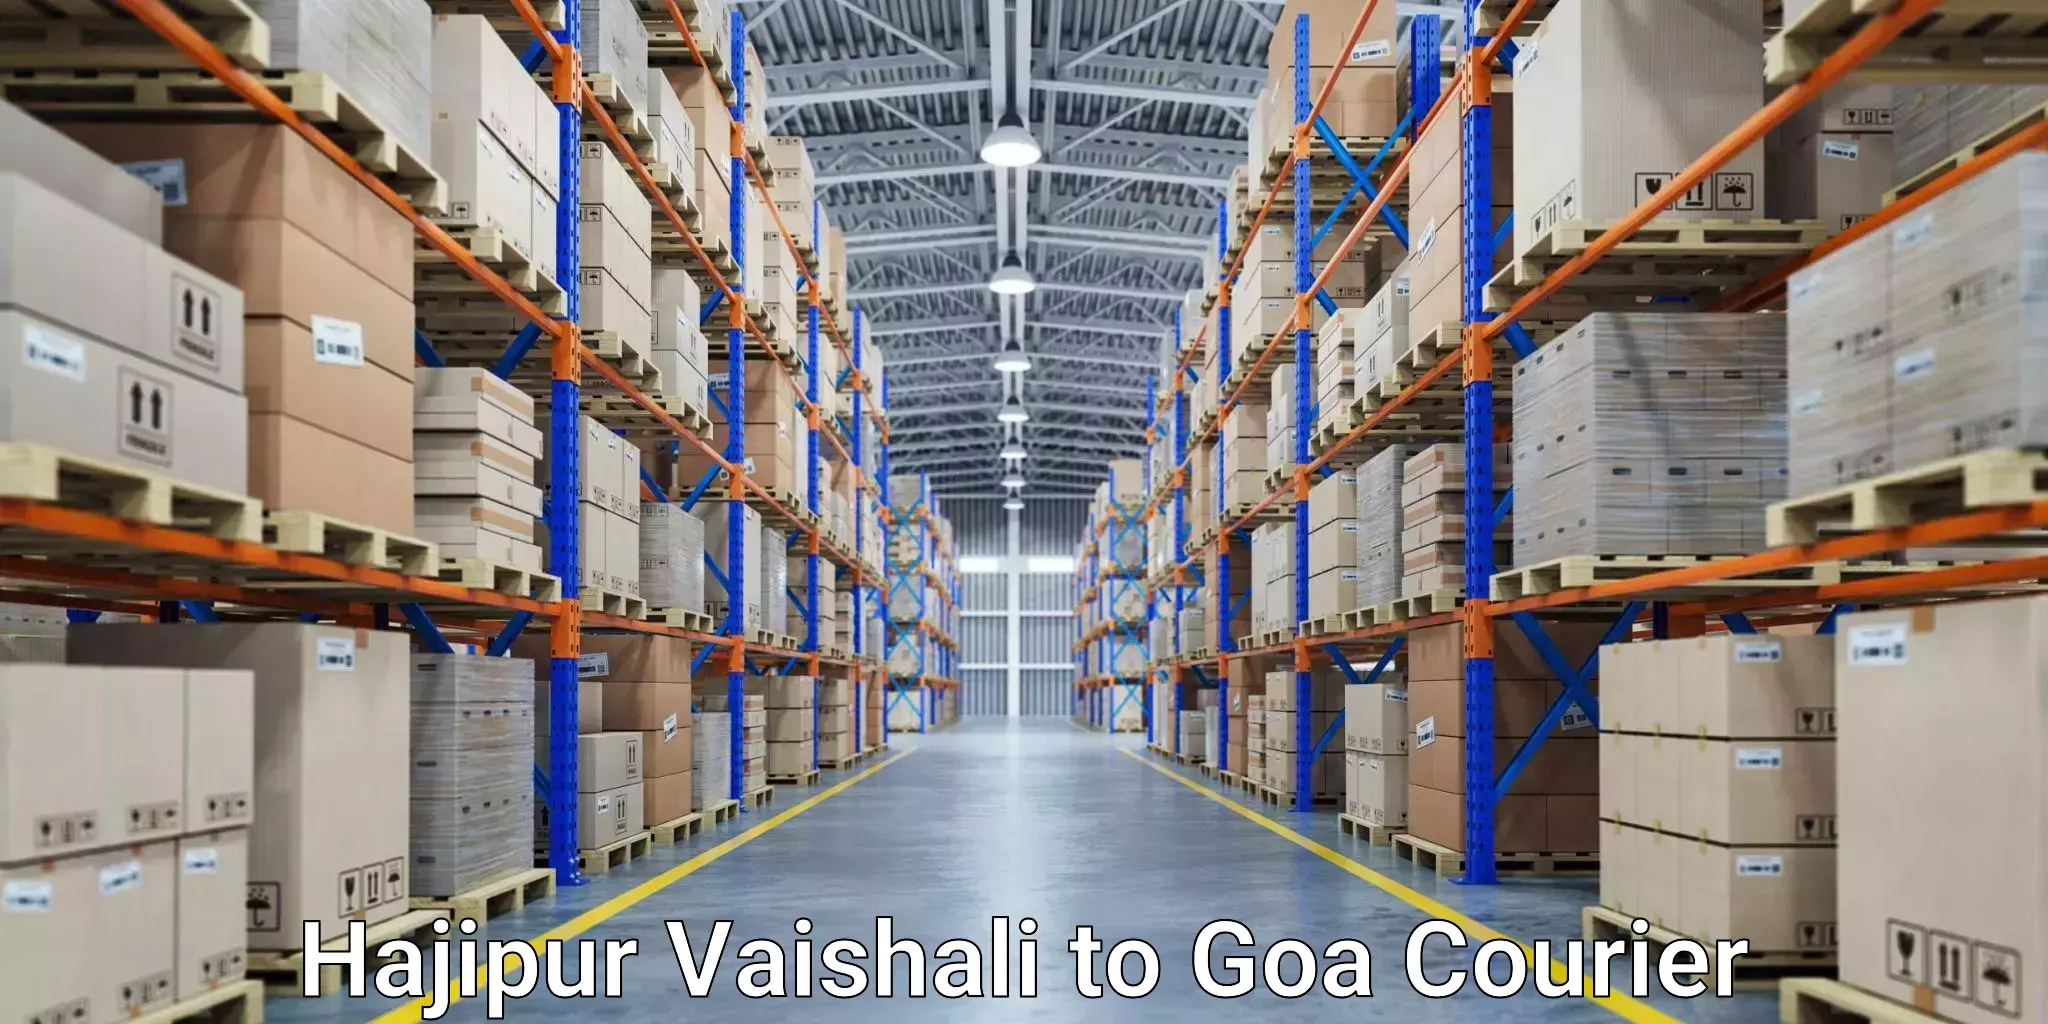 Comprehensive delivery network Hajipur Vaishali to Panaji